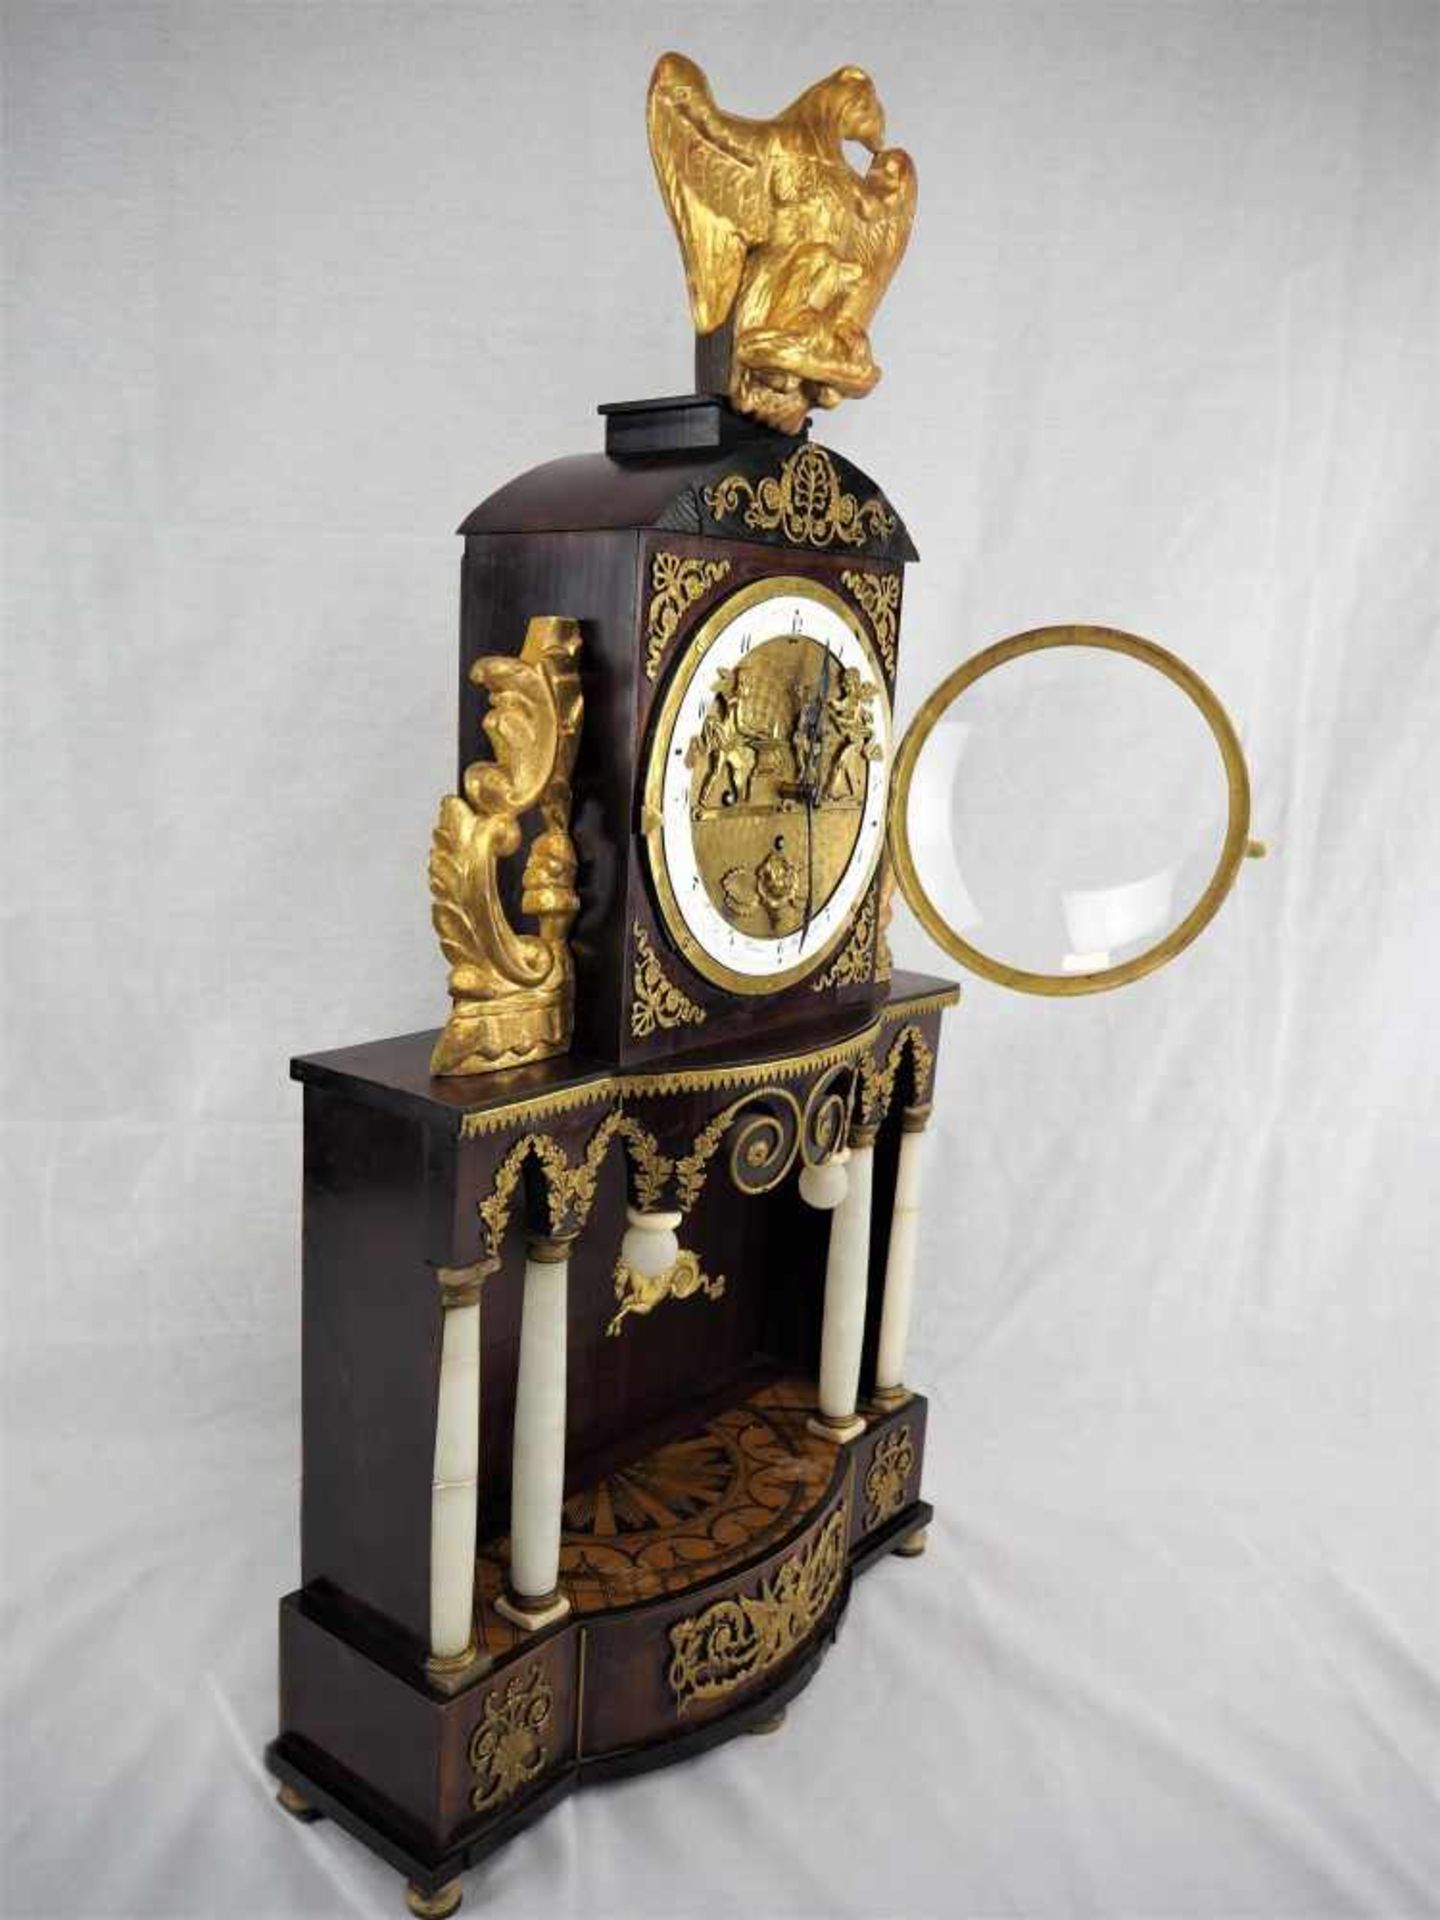 Wiener Portaluhr - Hausherrenuhr um 1820mit beweglichem Figurenautomat (Schmied und Schleifer), - Bild 7 aus 9